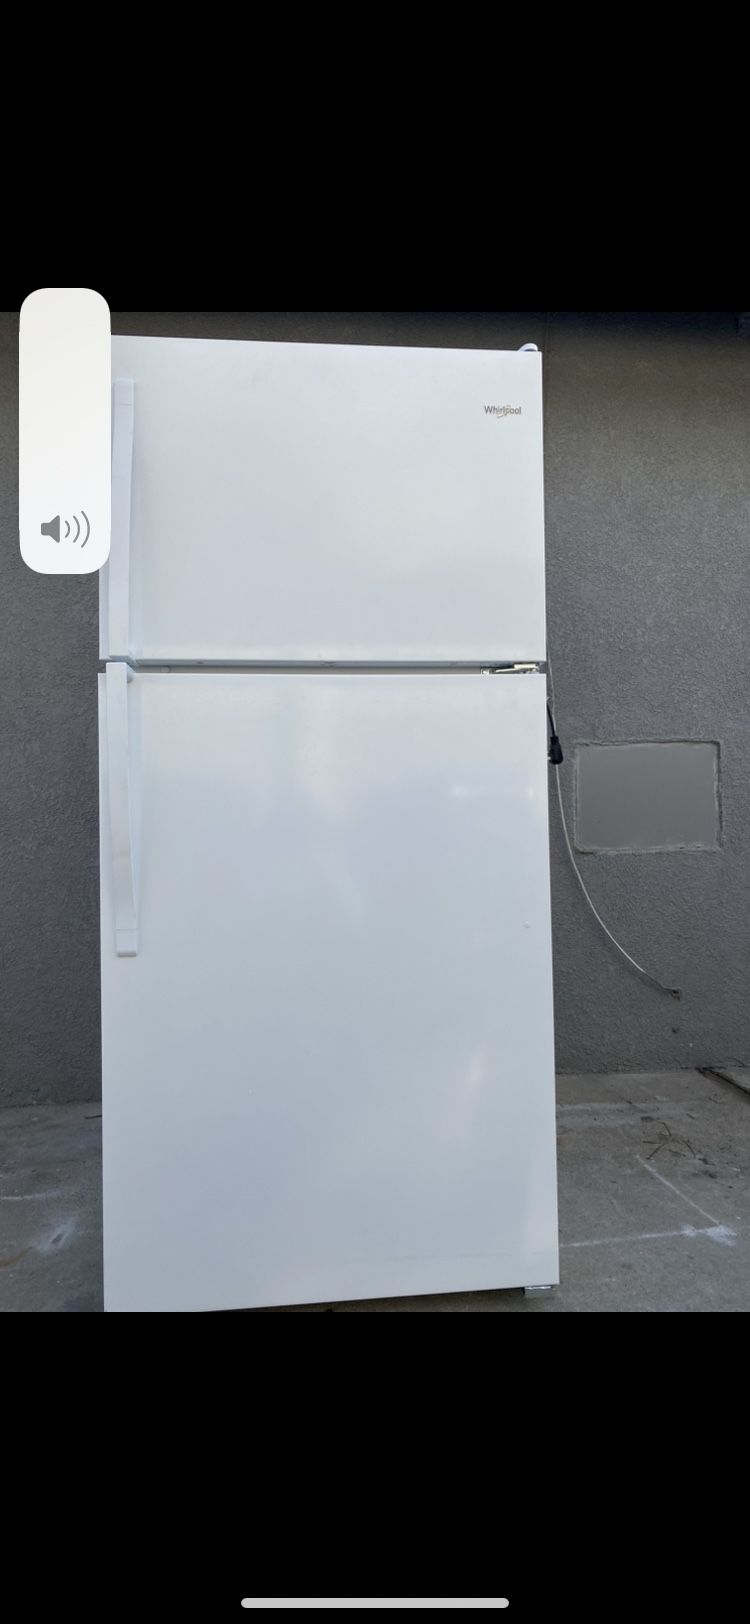 Whitpool Beautiful White refrigerator 